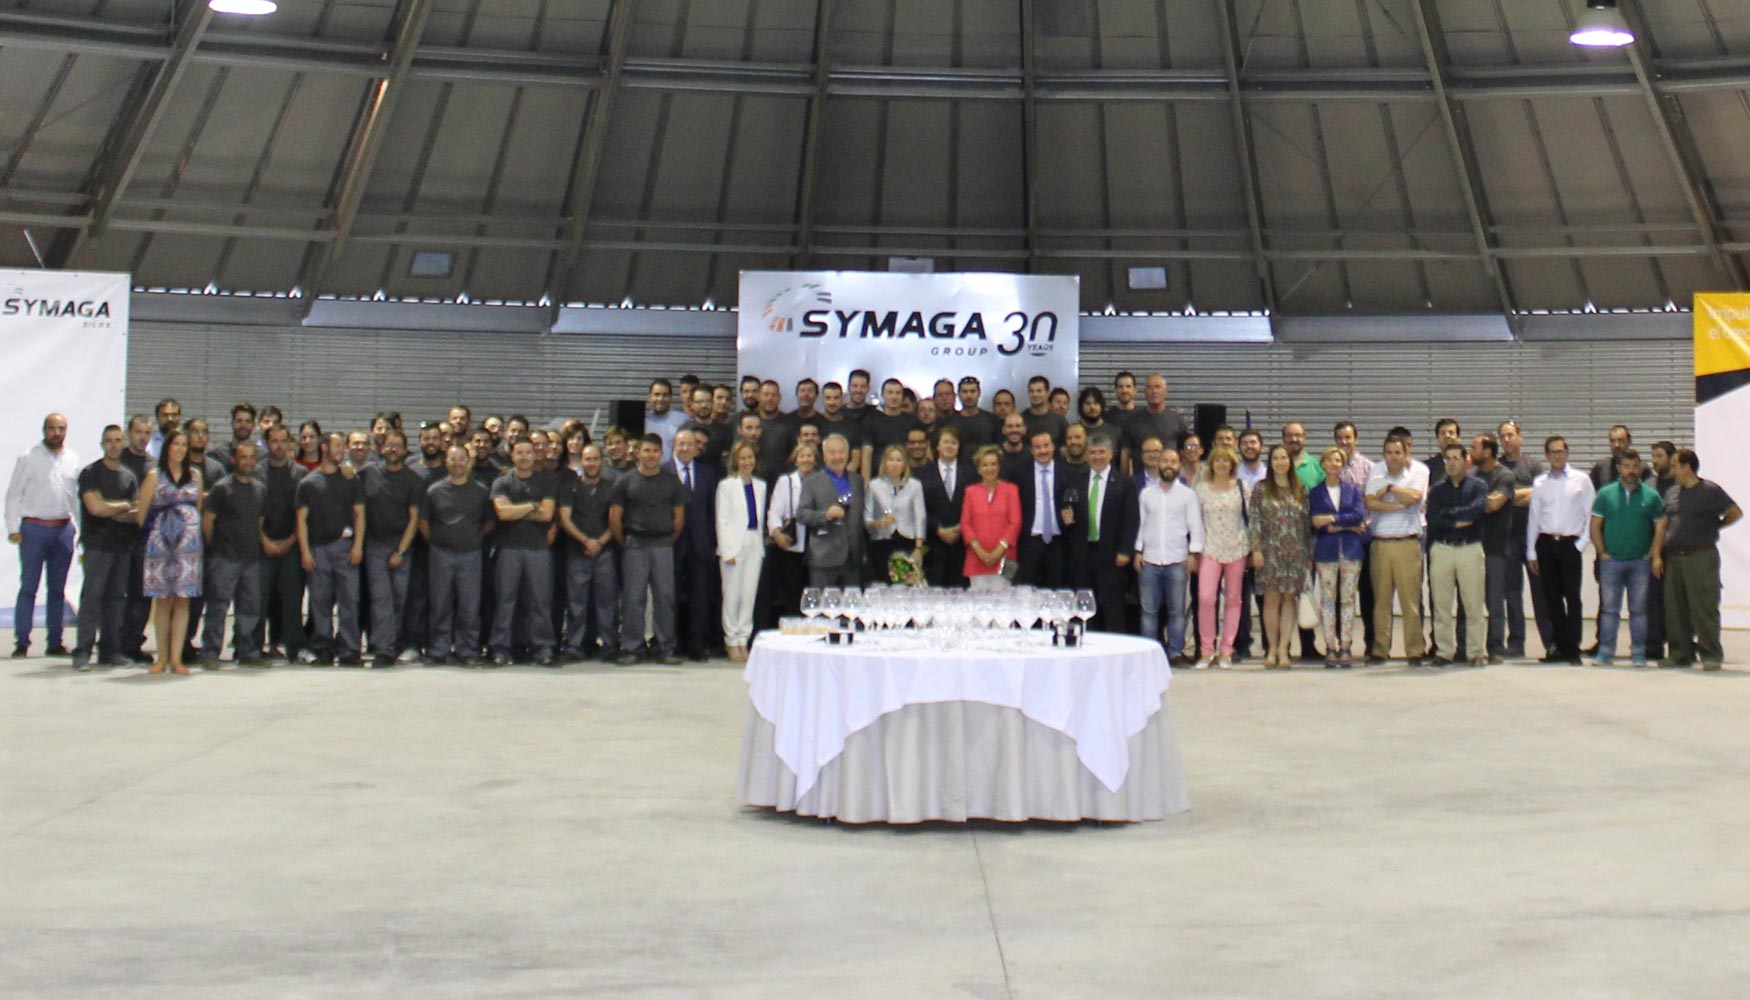 Alfonso Garrido, presidente de Symaga Group, present la nueva estructura empresarial